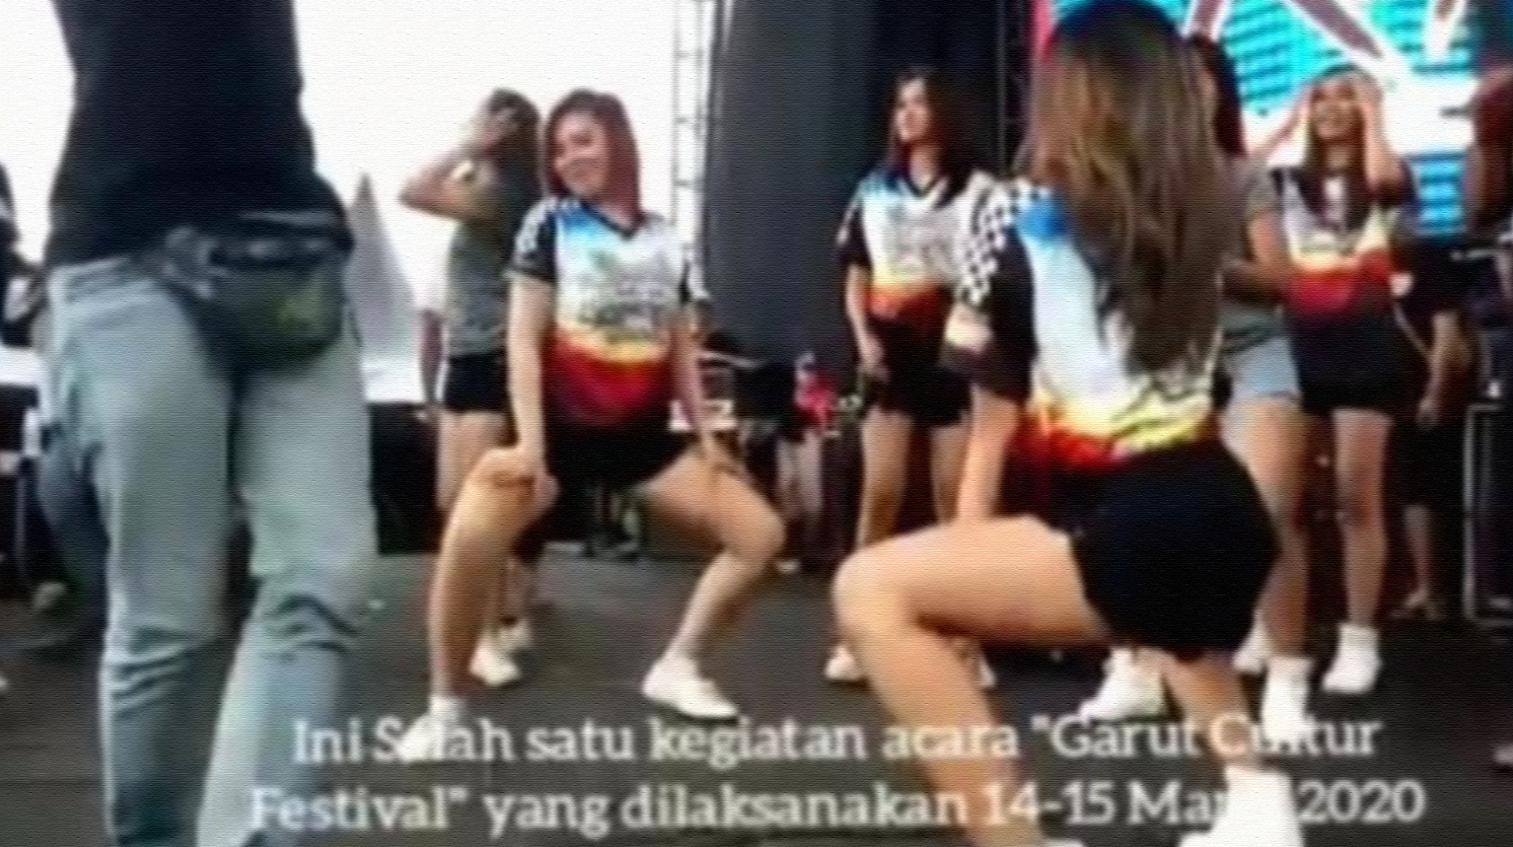 Goyangan erotis di panggung Garut Culture Festival. (Foto: WhatsApp)